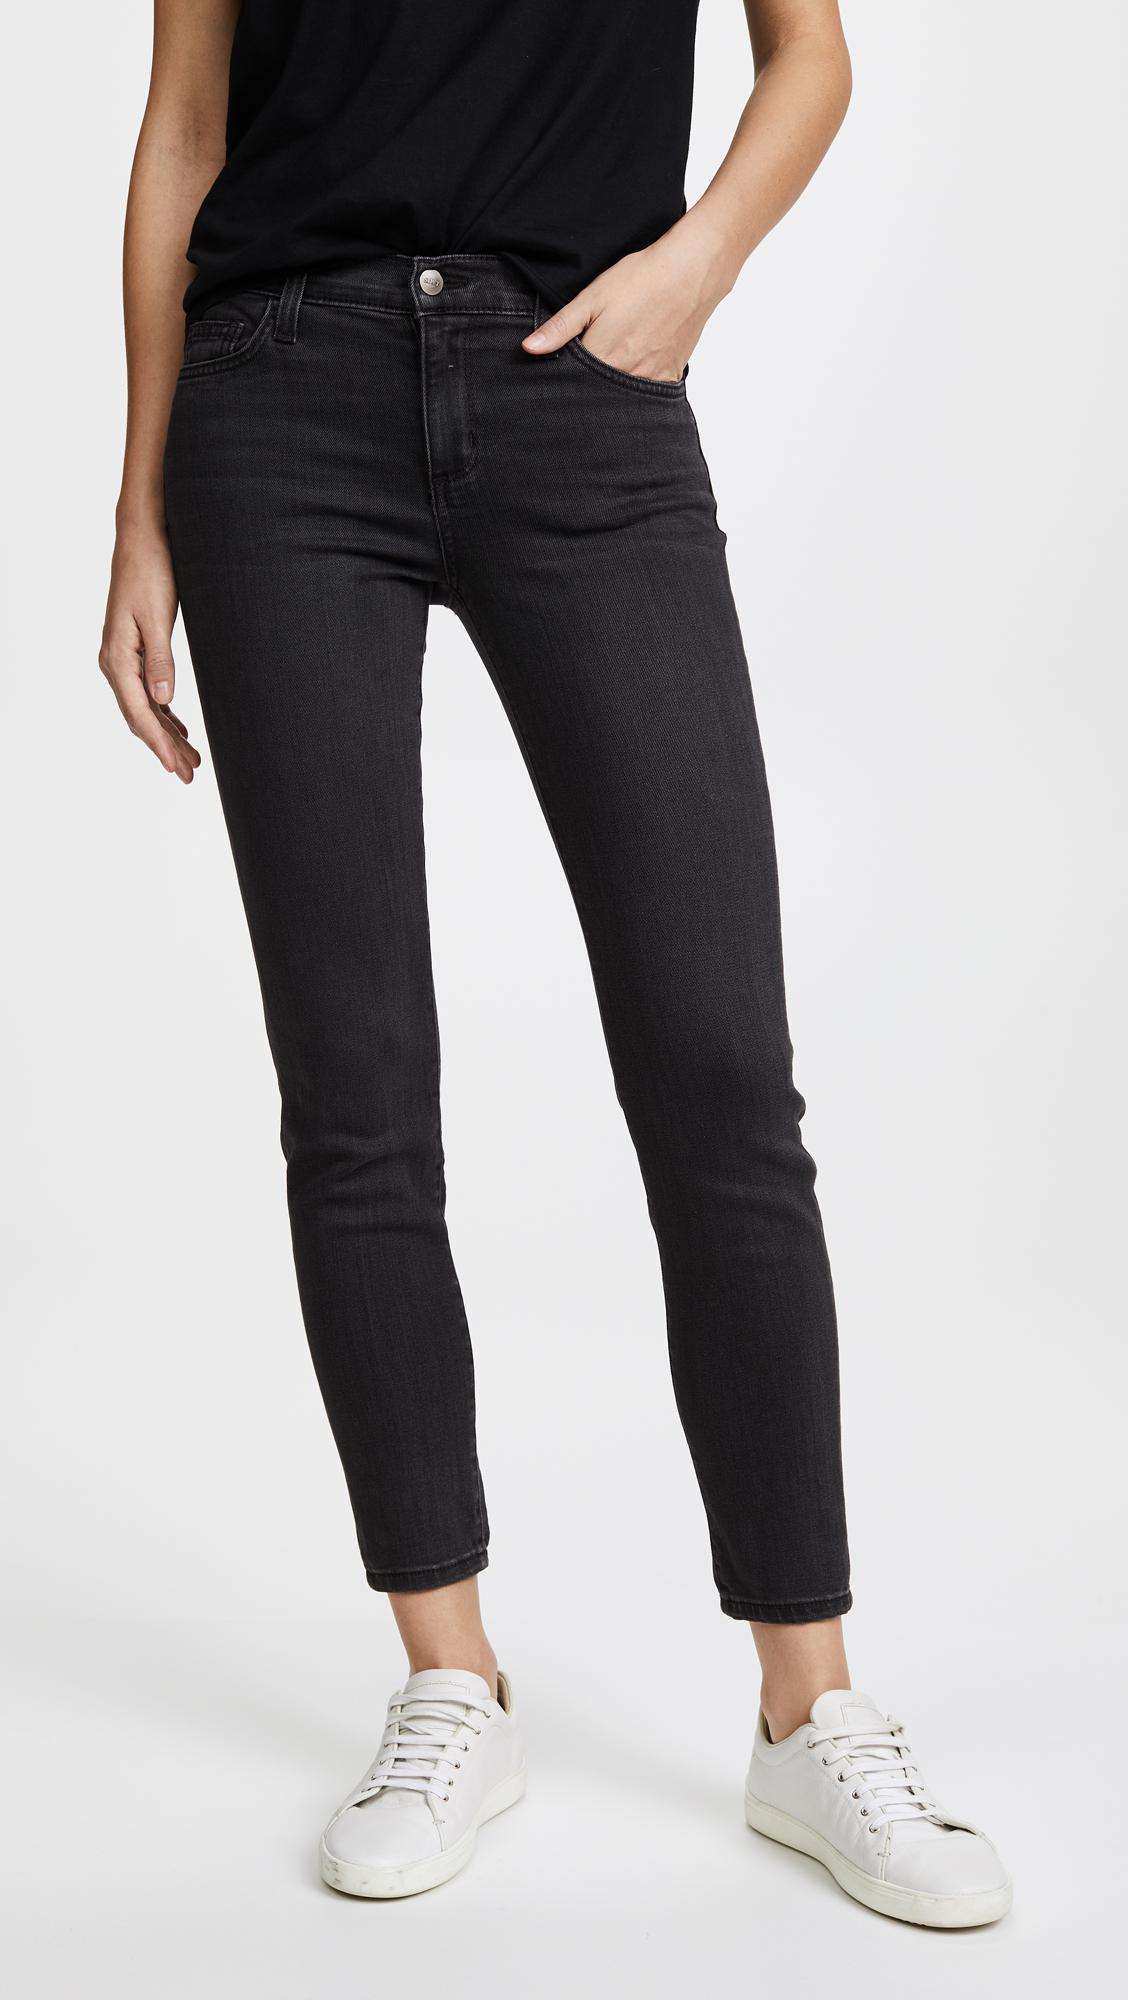 Lyst - Siwy Lauren Mid Rise Skinny Jeans in Black